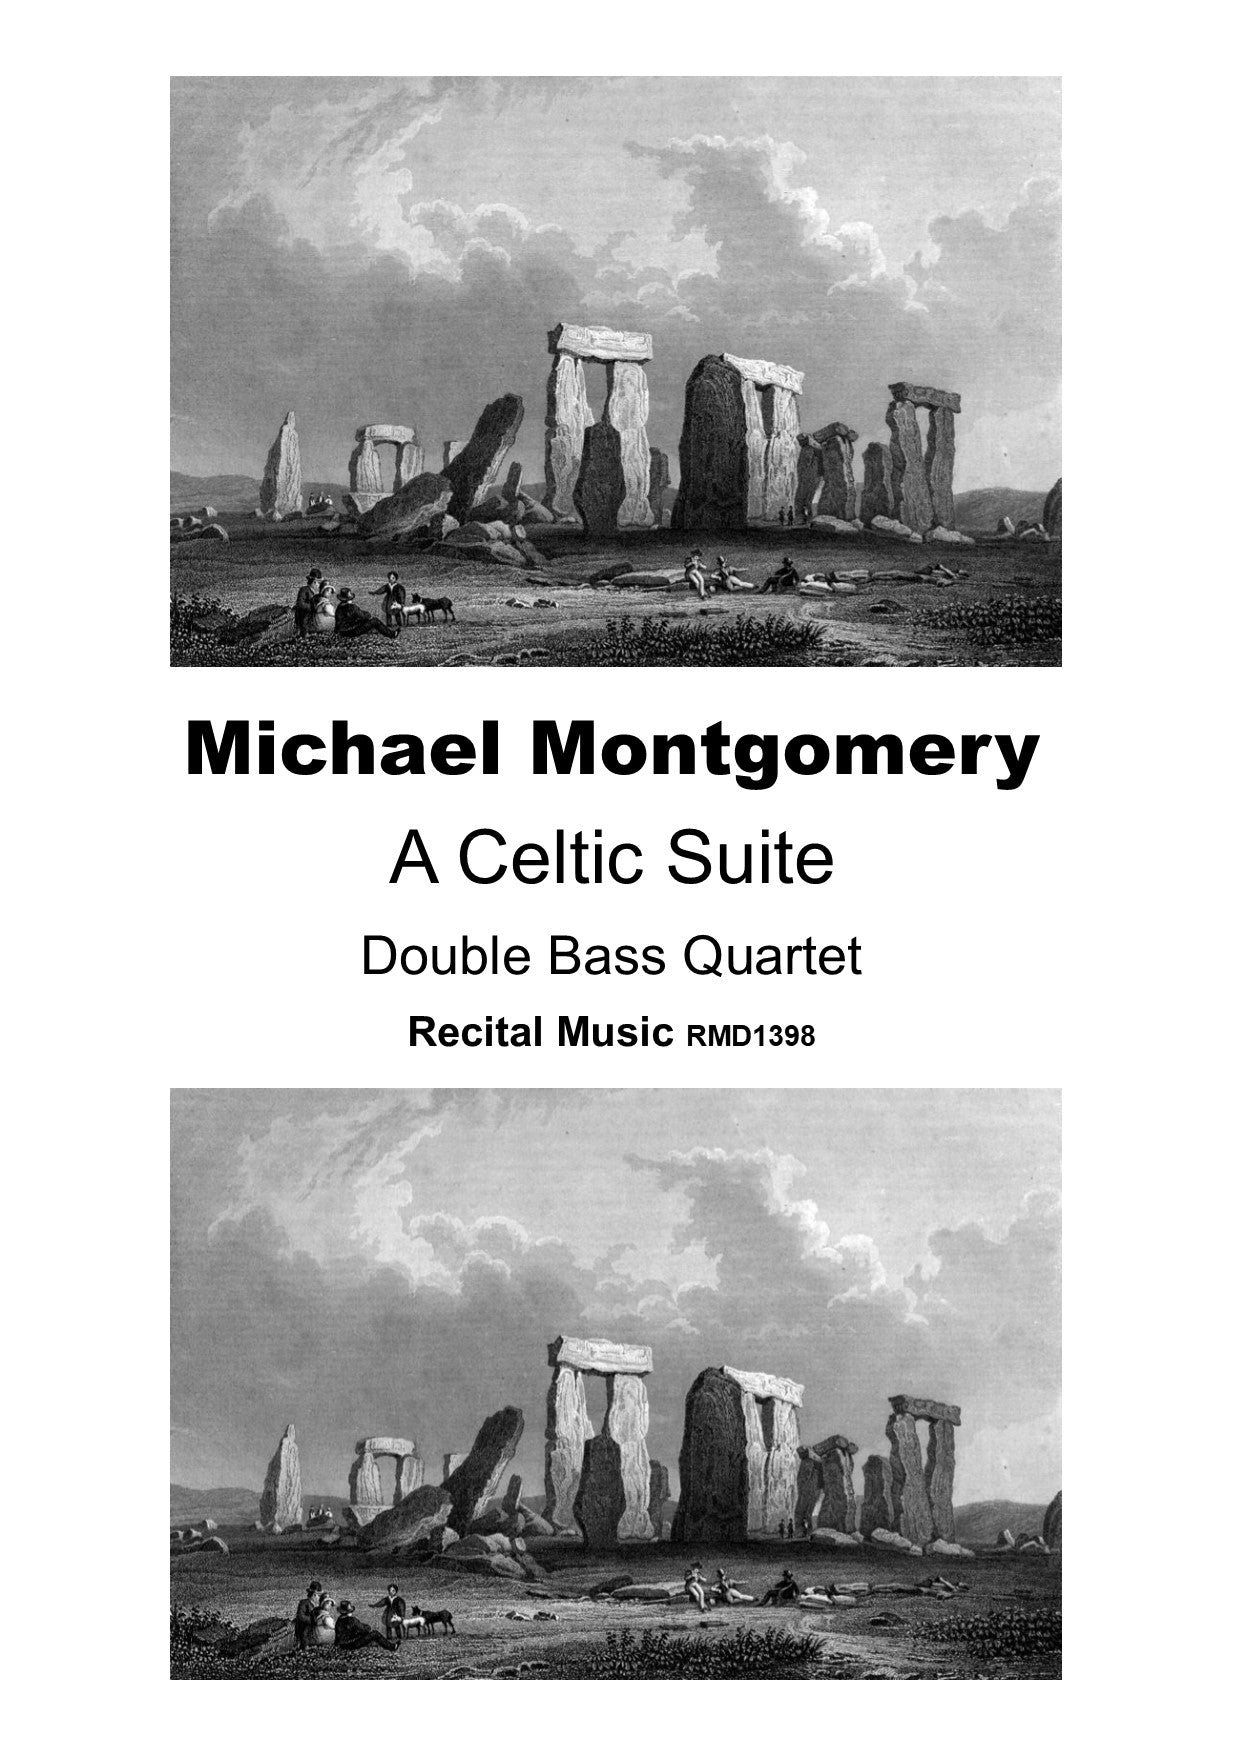 Michael Montgomery: A Celtic Suite for double bass quartet